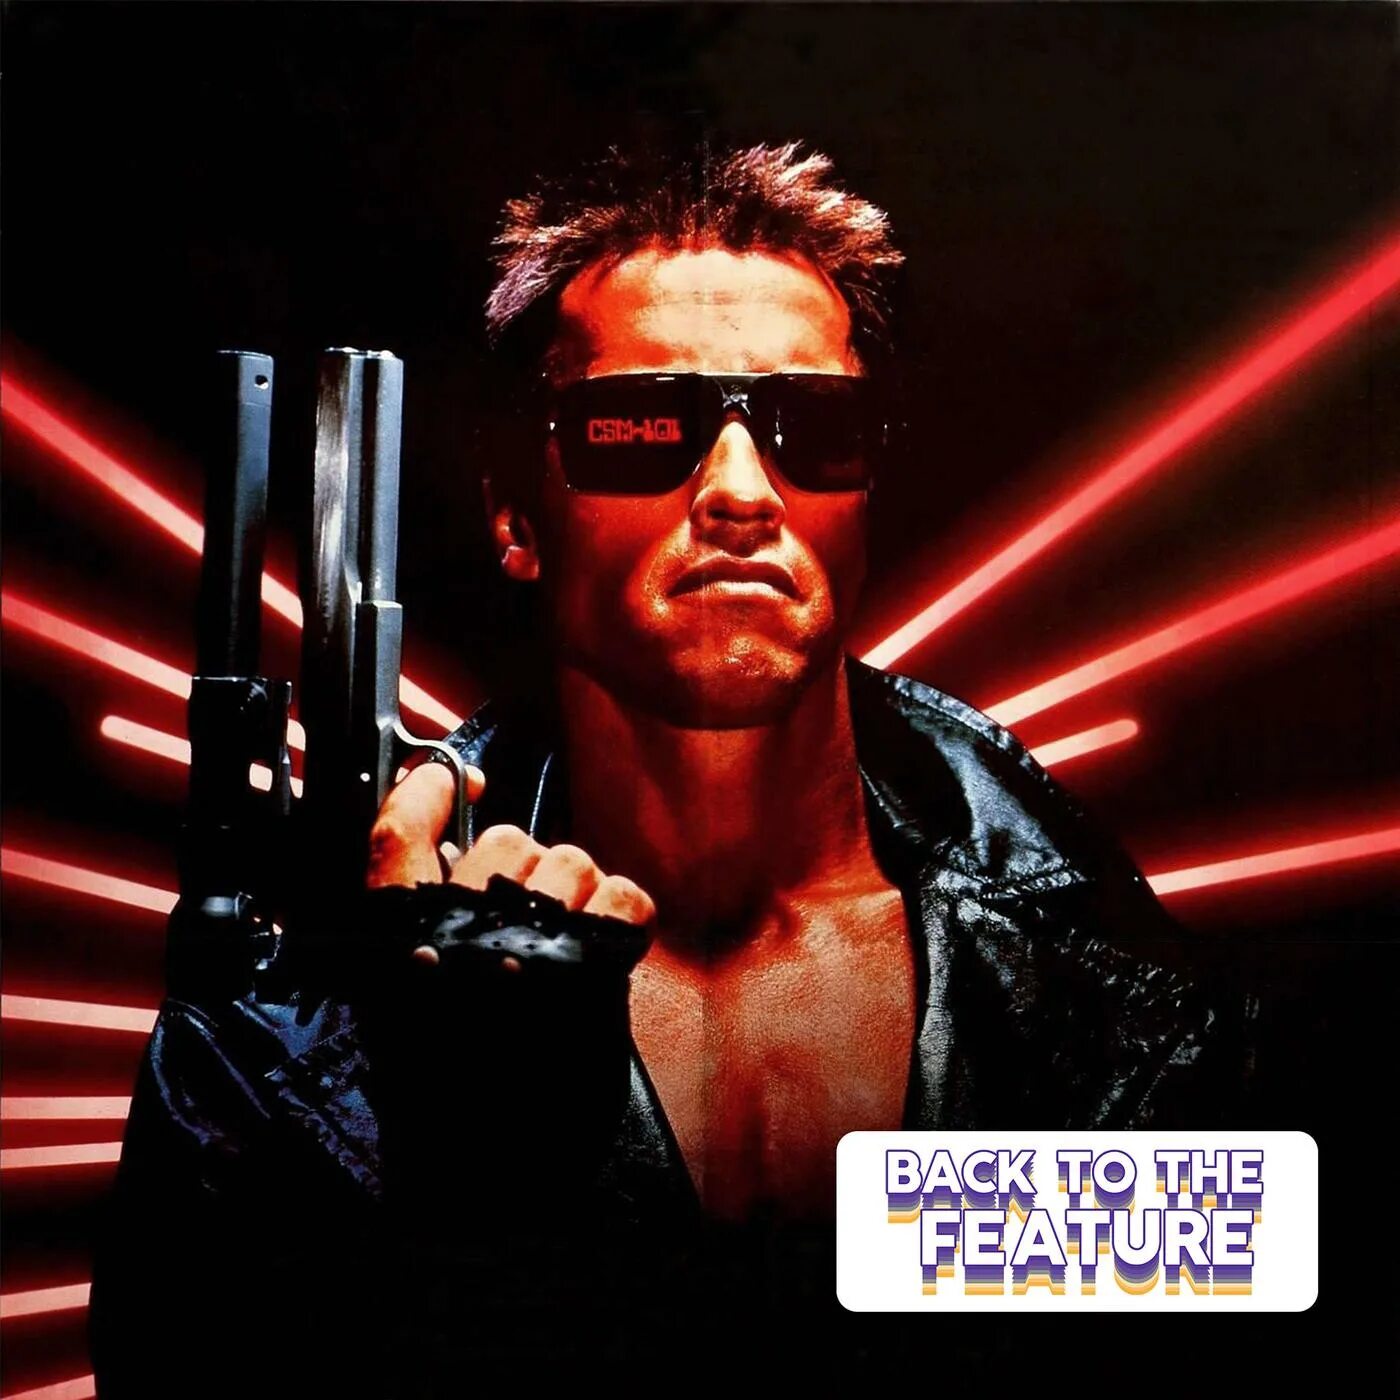 Терминатор 1 на телефон. Терминатор 1984ресонтруки. Постер обложка Терминатор (the Terminator) 1984. Терминатор 1984 и Терминатор 2 1991.